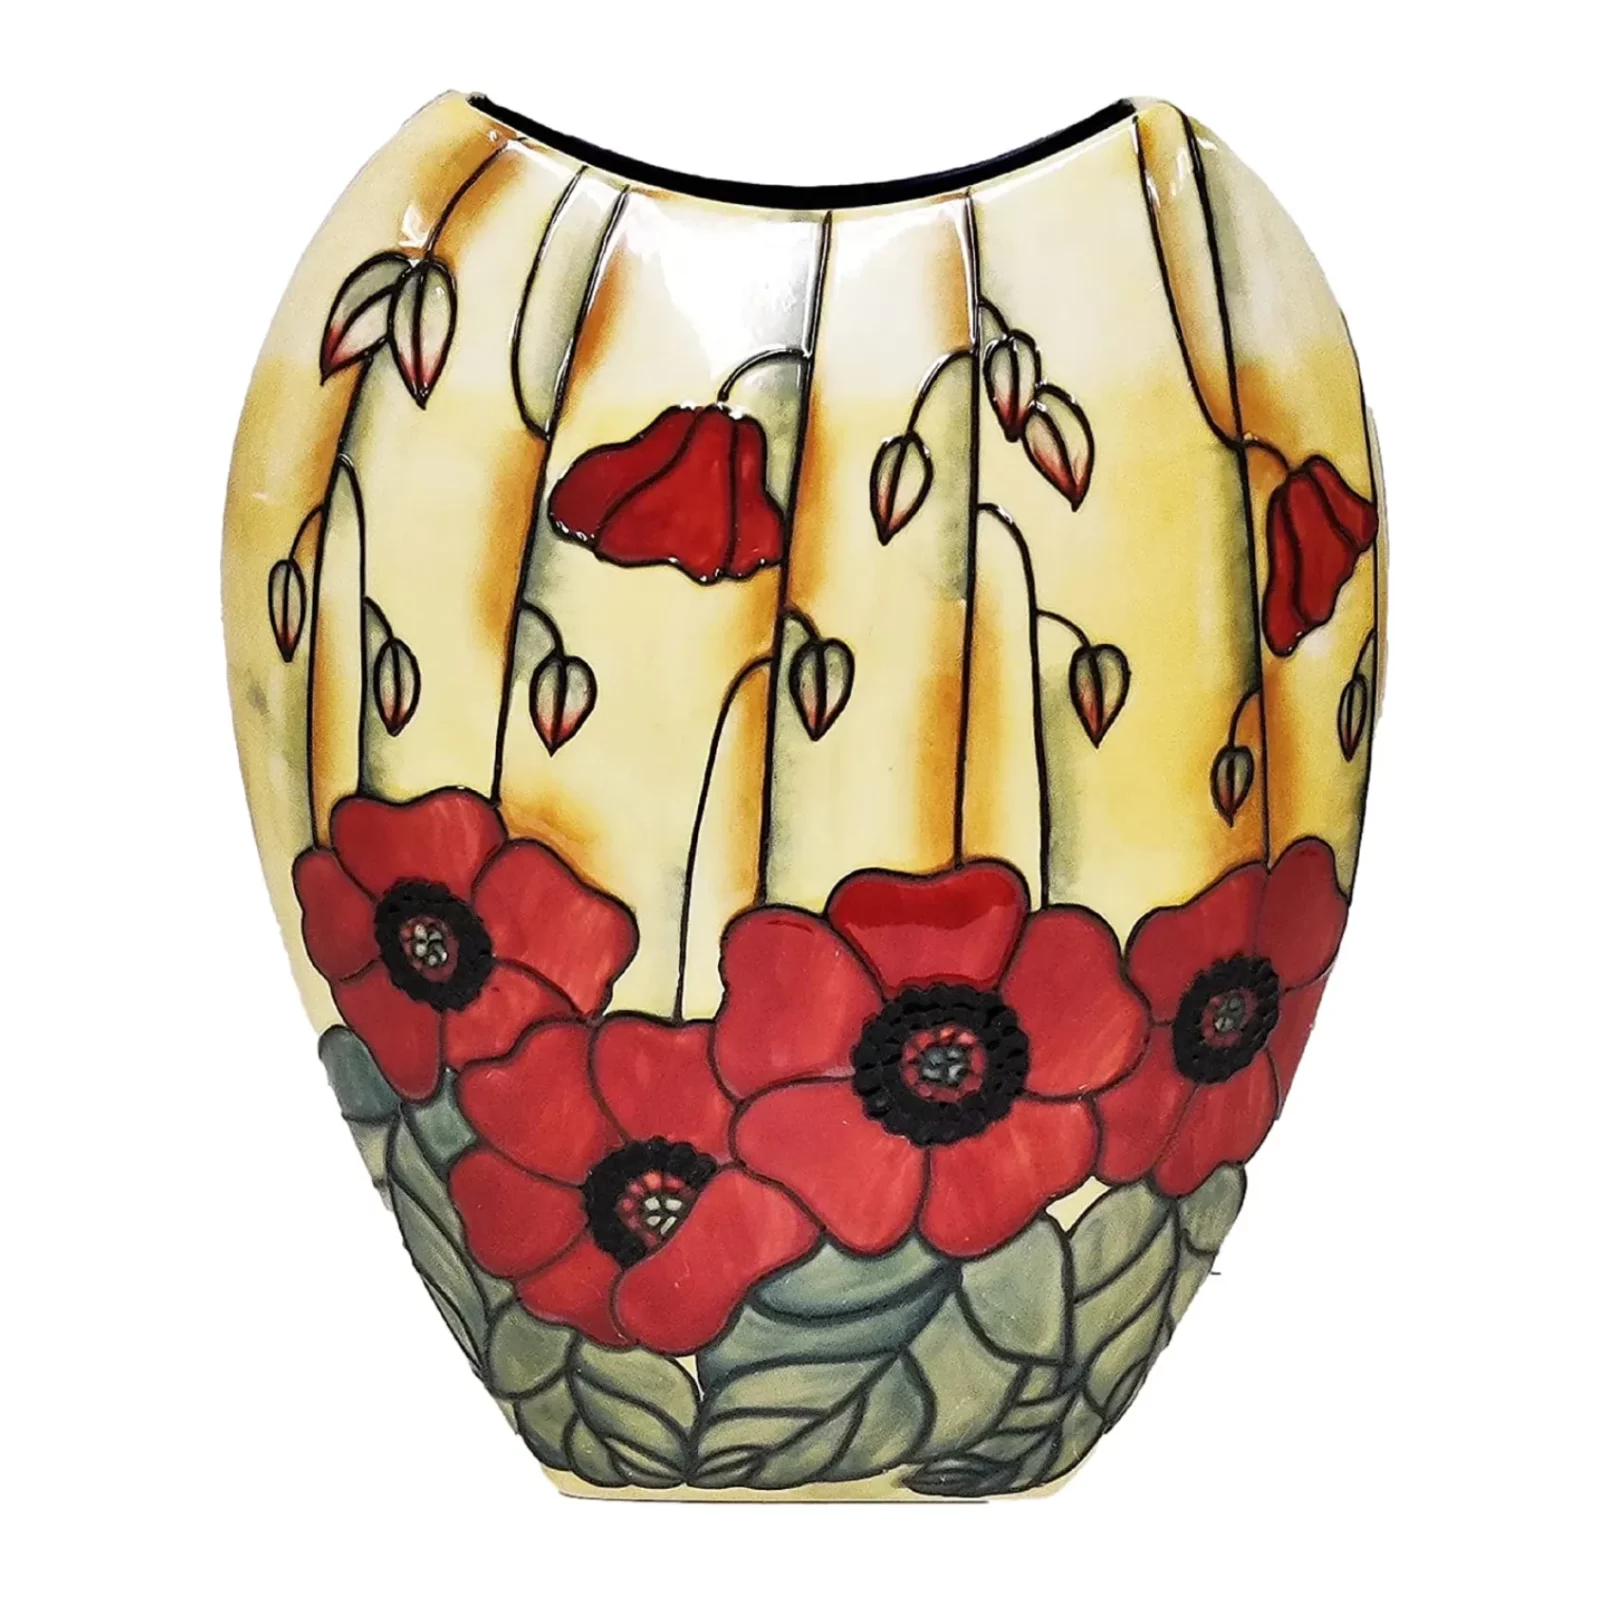 Red poppy flowers surround the Vase on Faint yellow backdrop stylish hand painted vase flat round shape